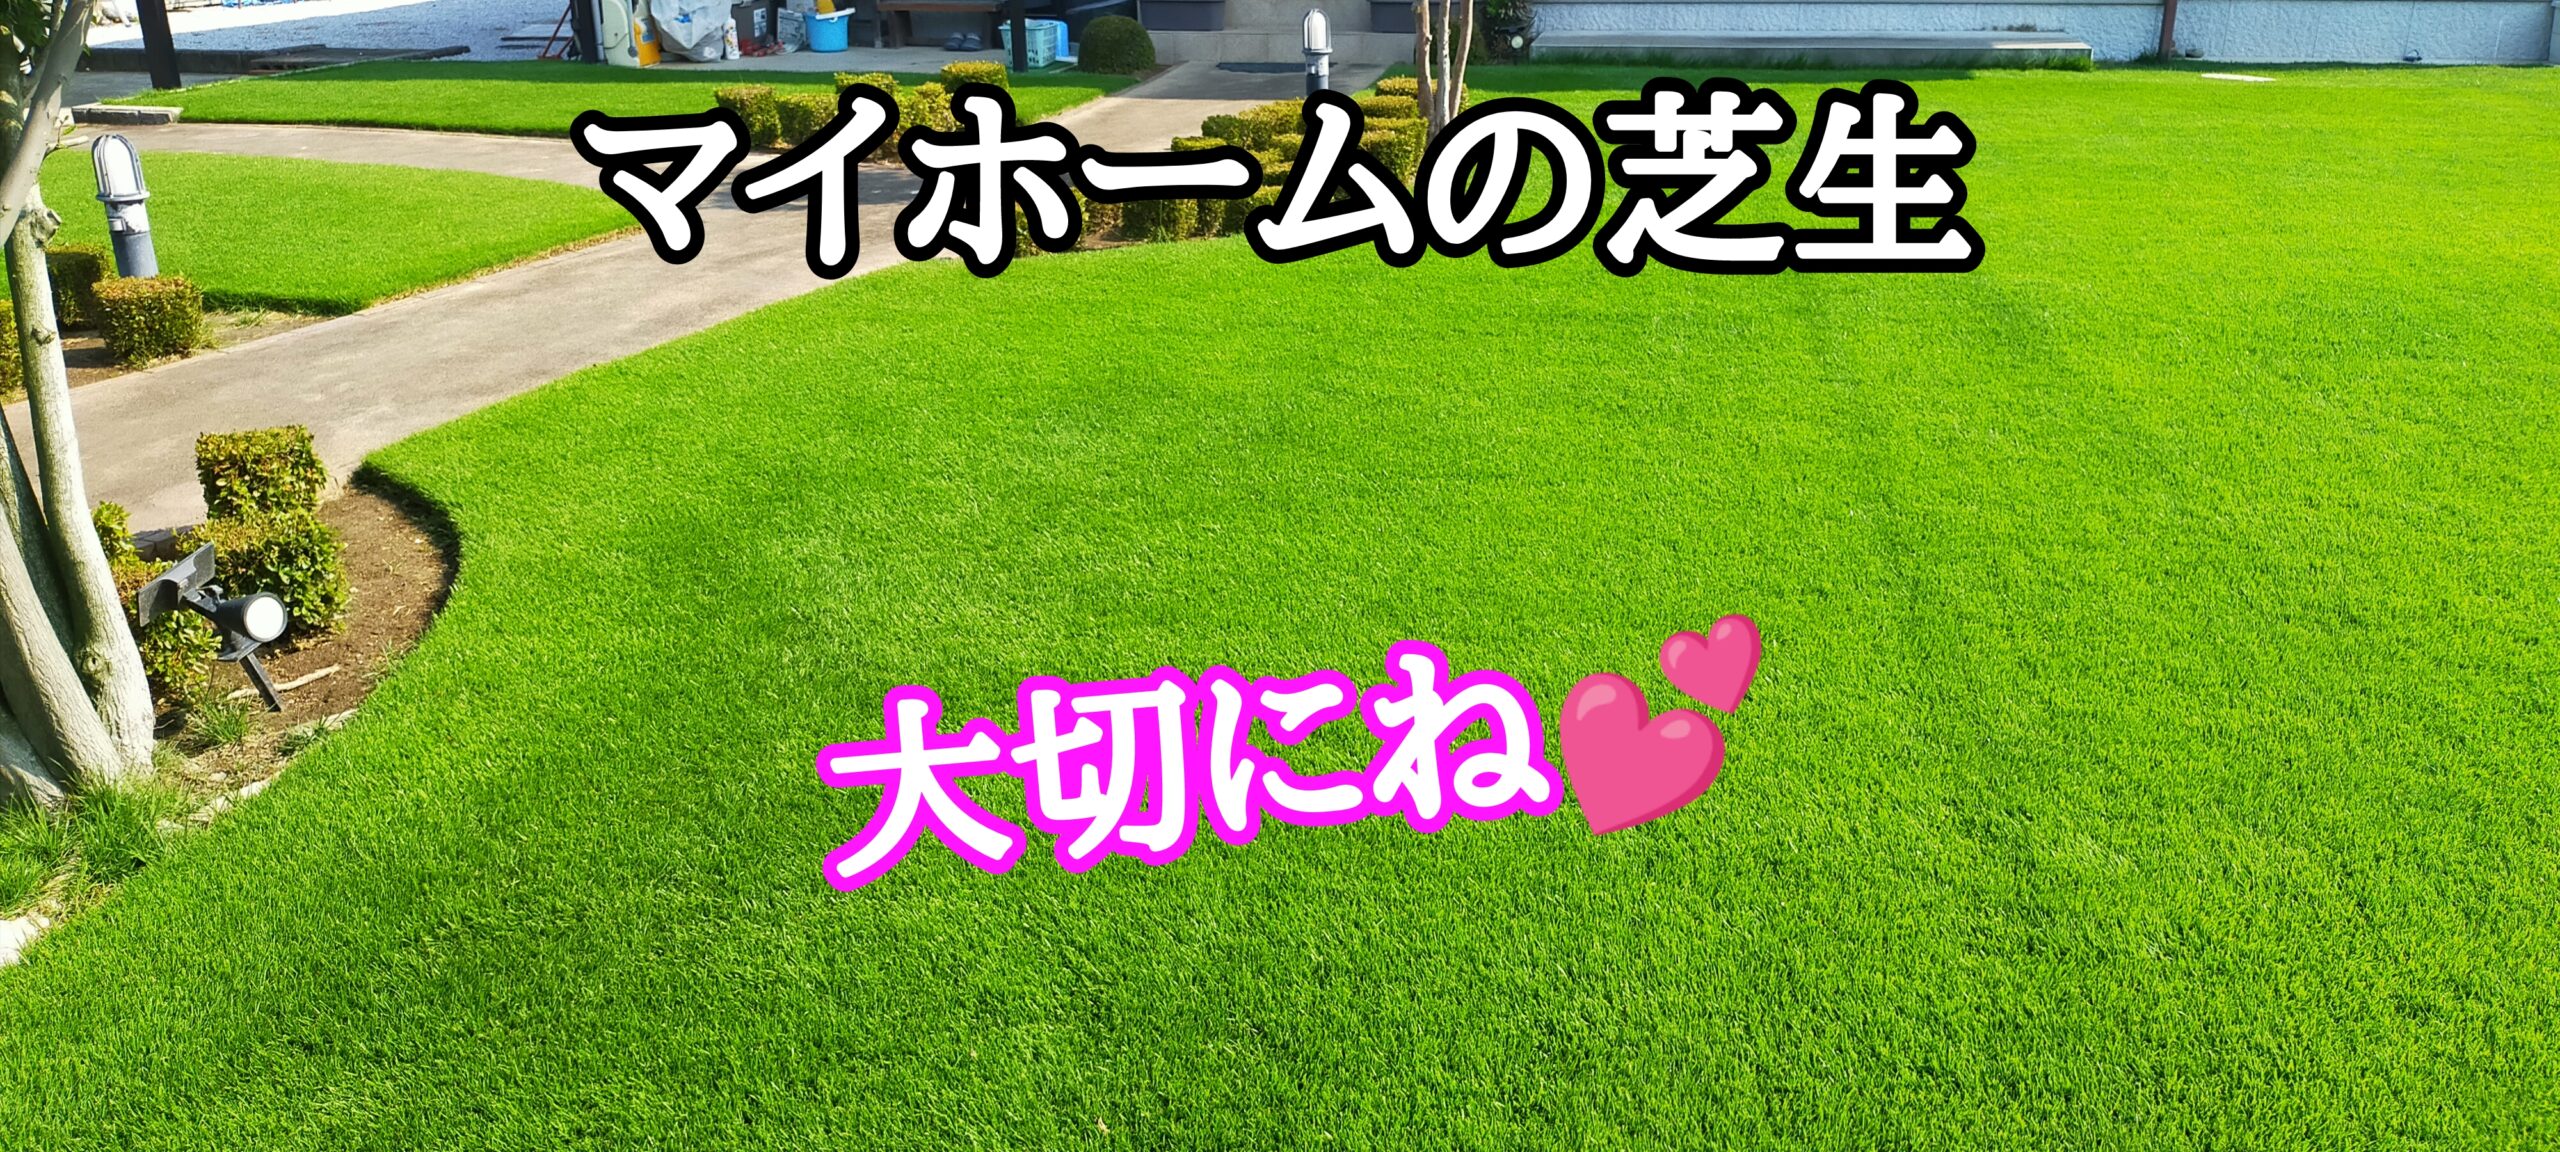 マイホームの芝生を大切に【stand.fm】